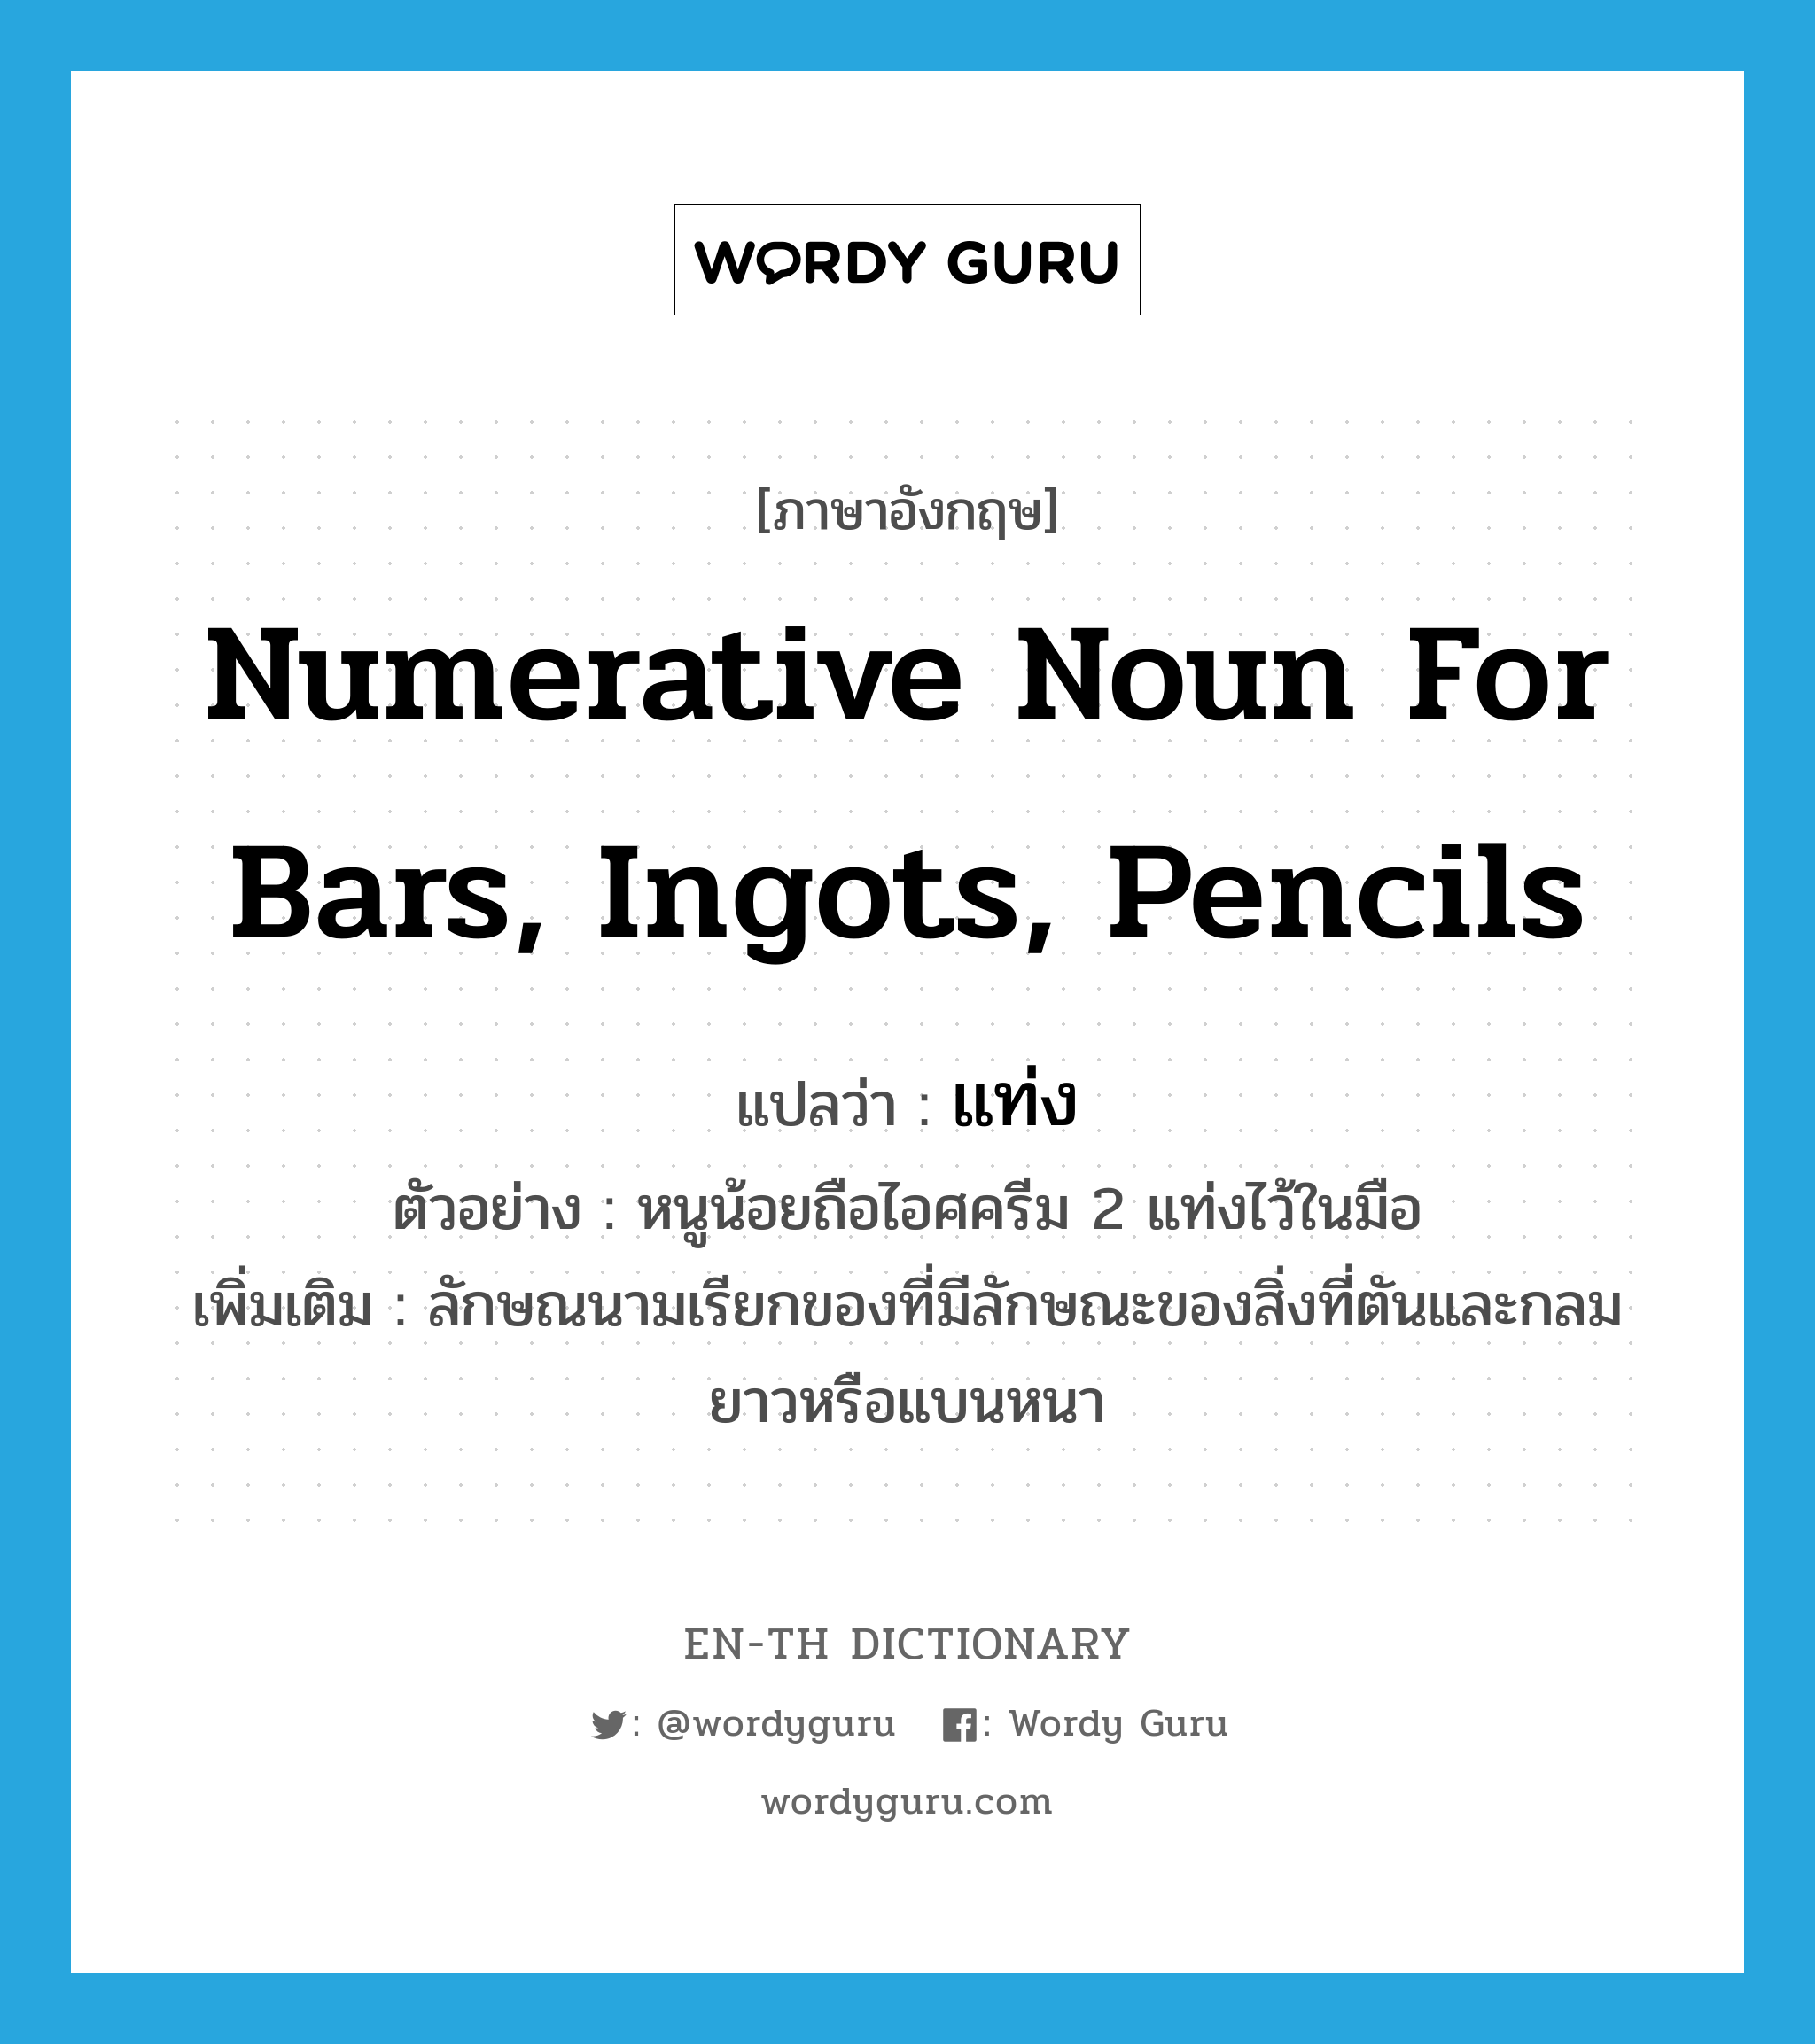 numerative noun for bars, ingots, pencils แปลว่า? คำศัพท์ในกลุ่มประเภท CLAS, คำศัพท์ภาษาอังกฤษ numerative noun for bars, ingots, pencils แปลว่า แท่ง ประเภท CLAS ตัวอย่าง หนูน้อยถือไอศครีม 2 แท่งไว้ในมือ เพิ่มเติม ลักษณนามเรียกของที่มีลักษณะของสิ่งที่ตันและกลมยาวหรือแบนหนา หมวด CLAS